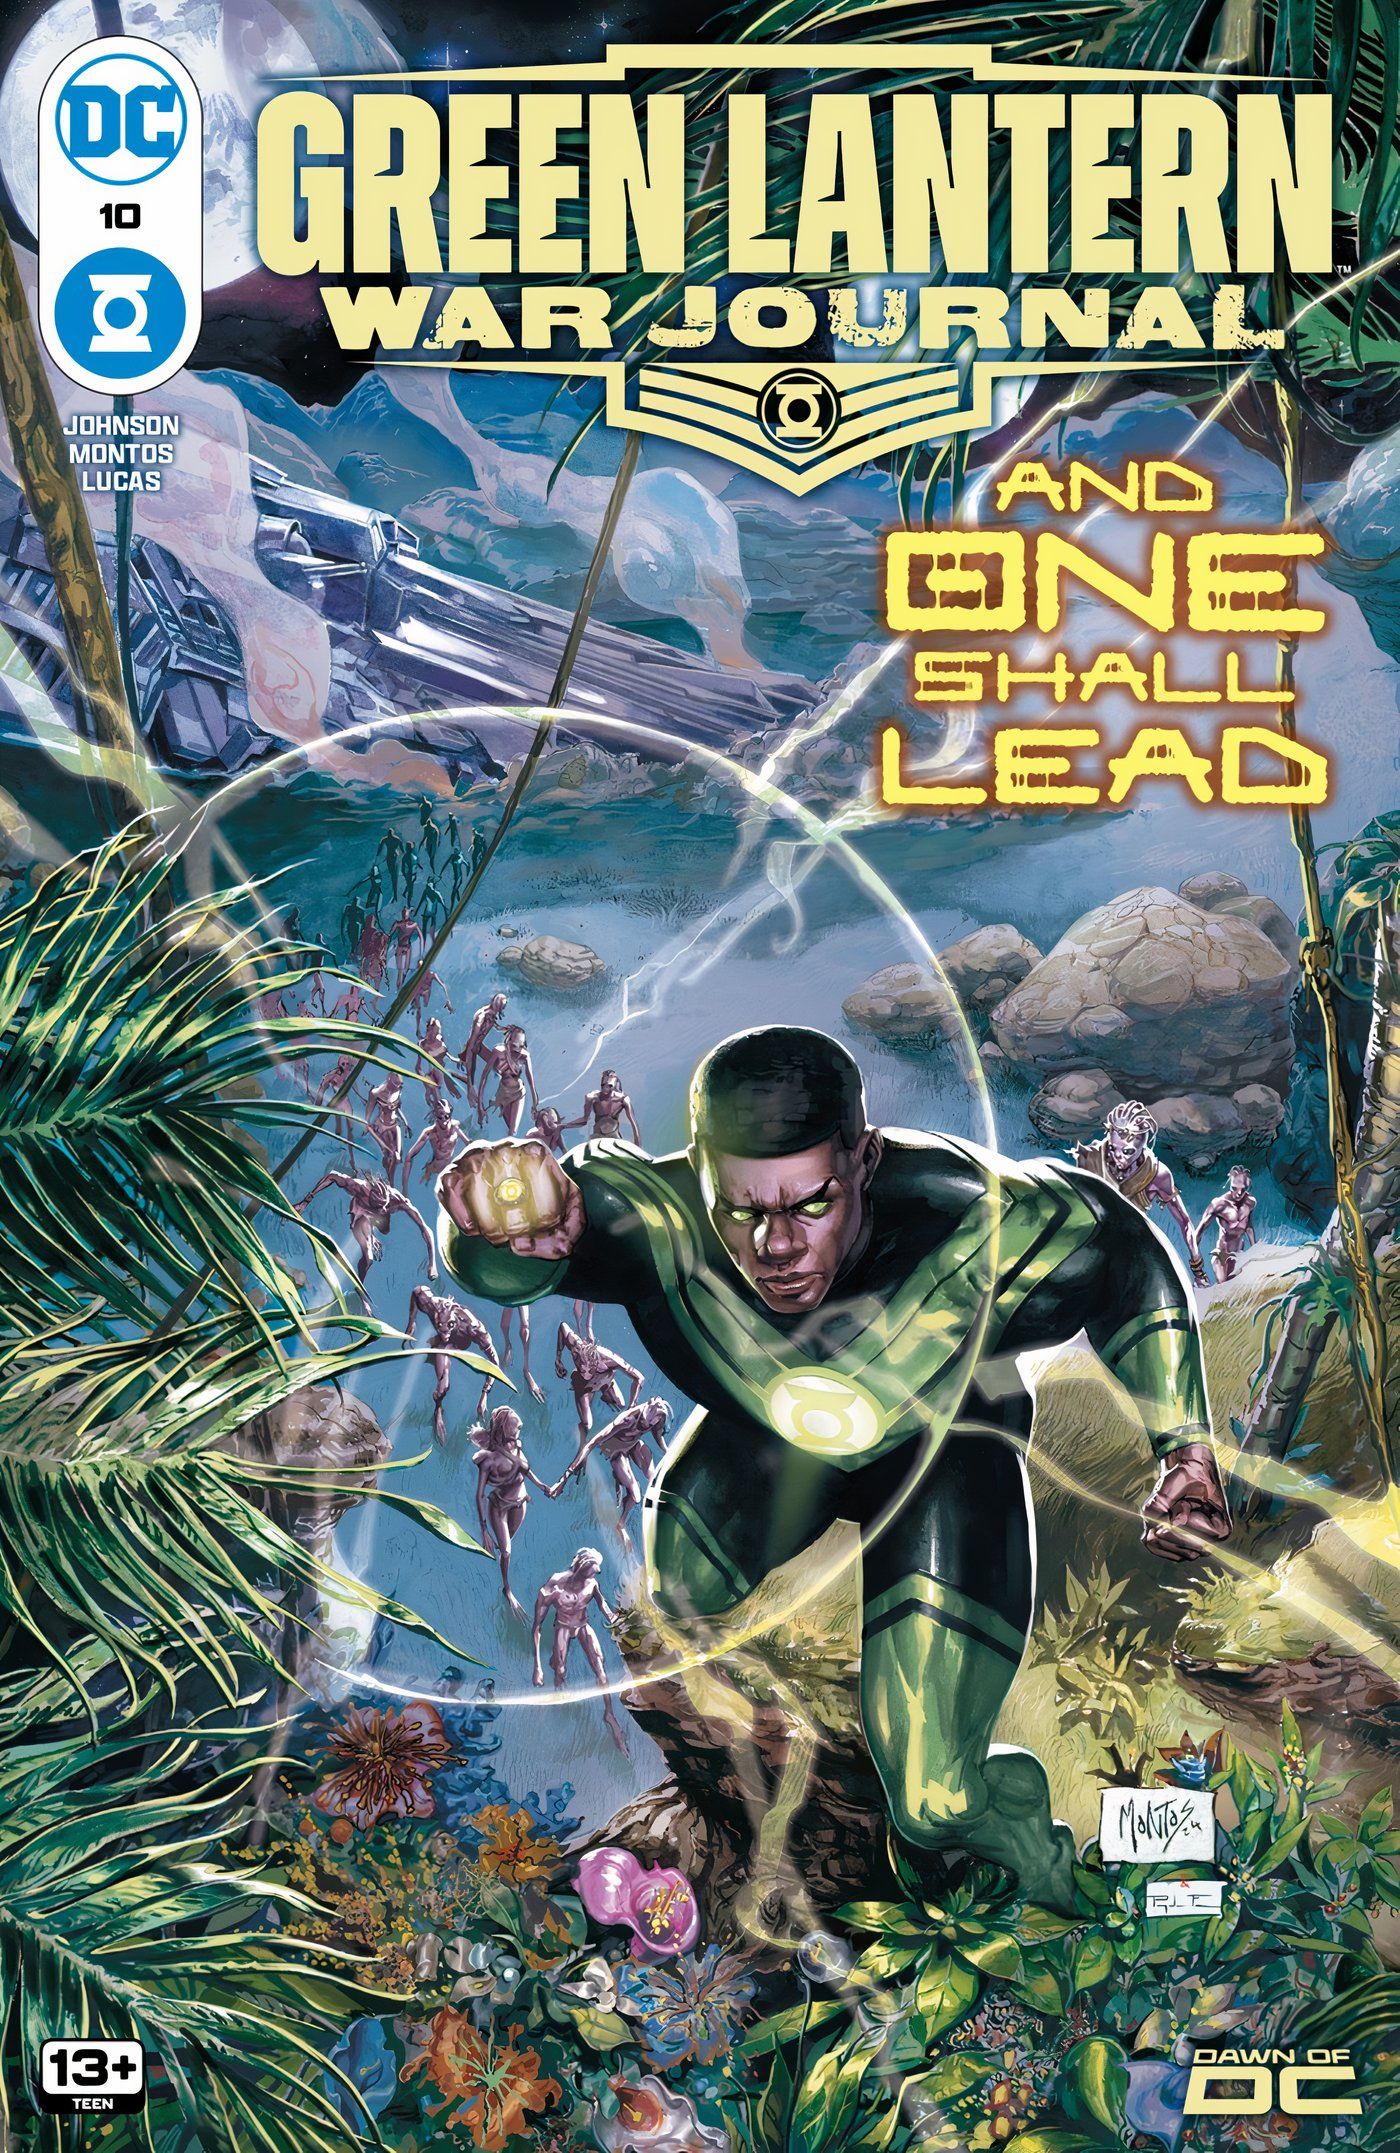 Green Lantern War Journal 10 Main Cover: John Stewart flying over an alien planet with flora.